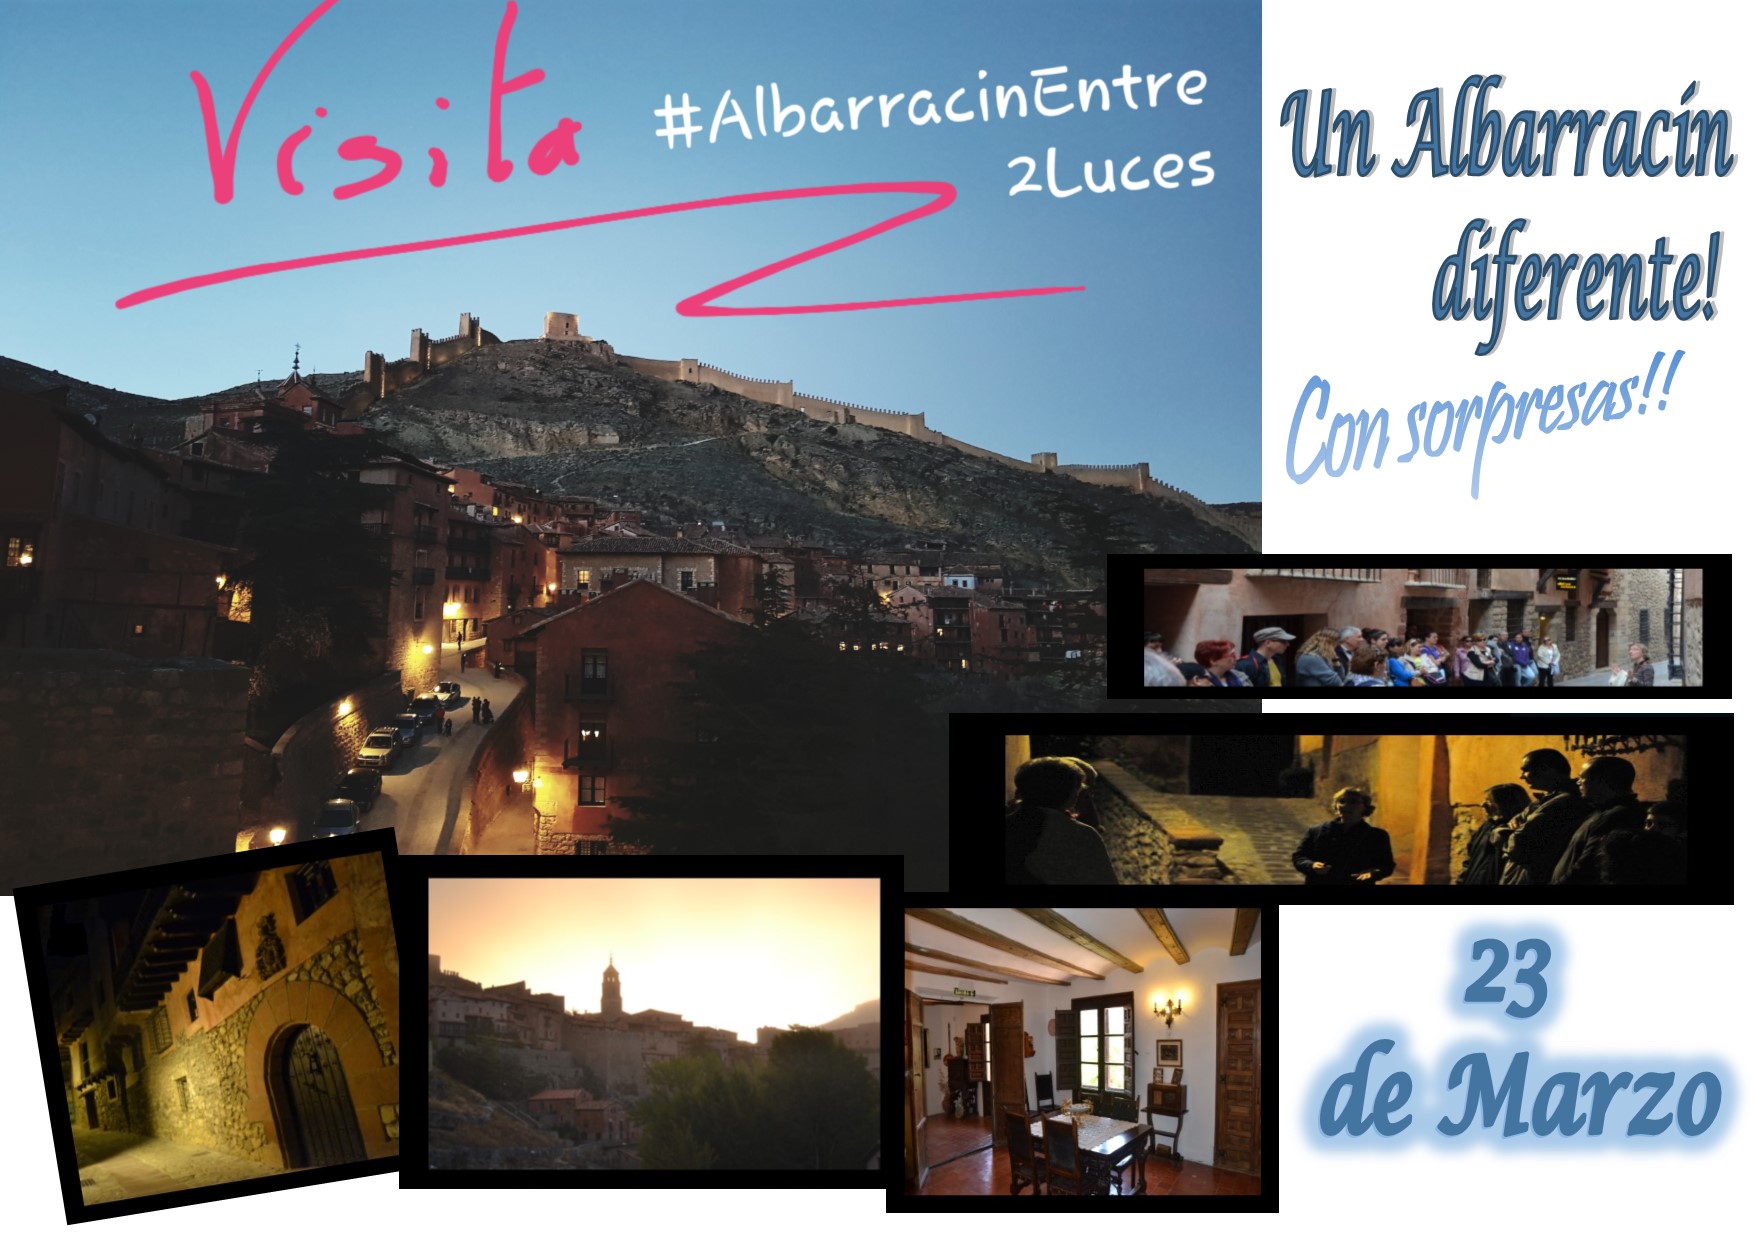 y este Sábado 23 de Marzo…cuando cae la tarde…Albarracín de visita guiada con sorpresas!!